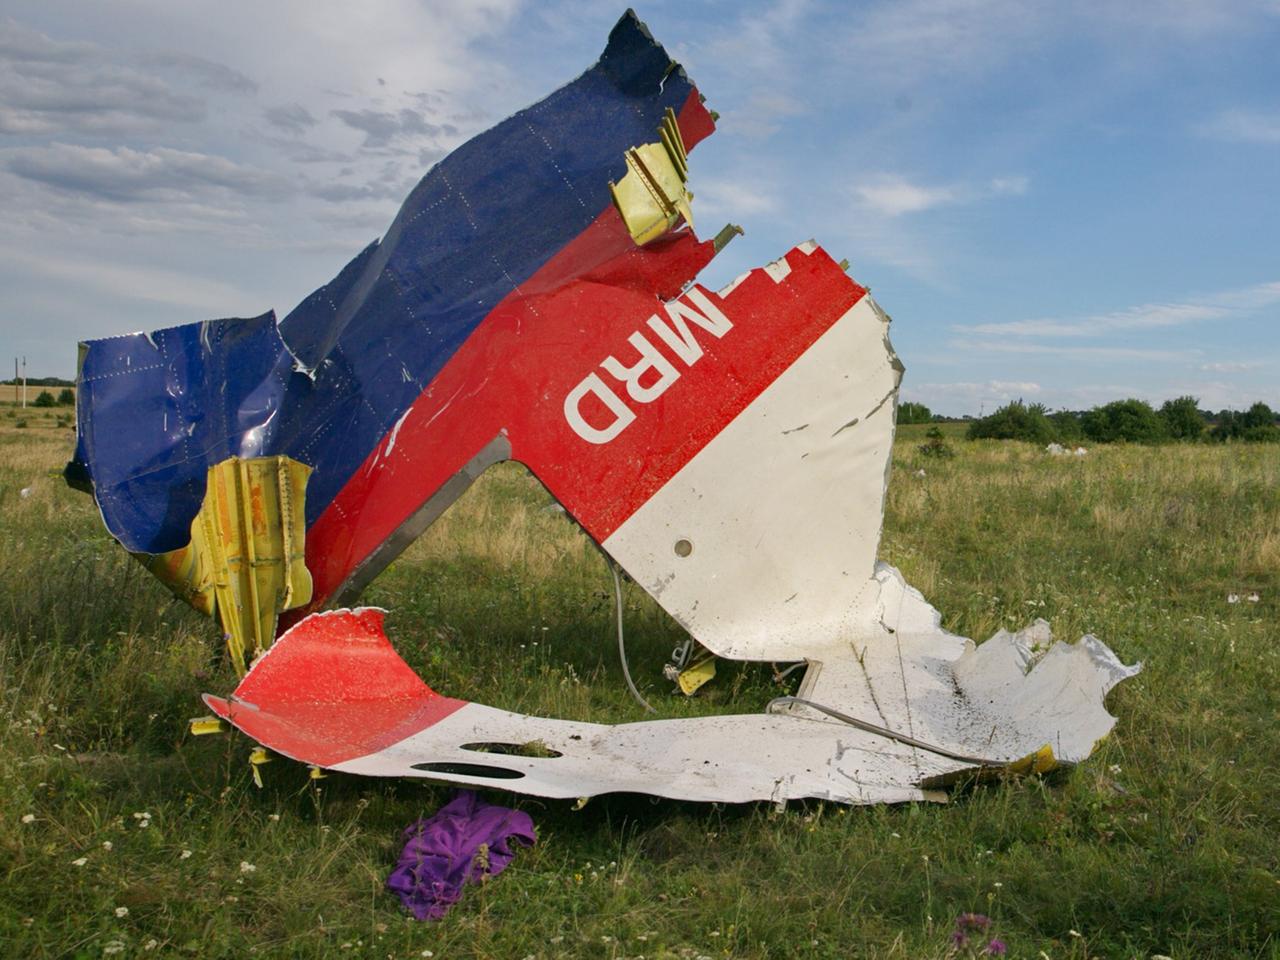 Wrackteil der in der Ukraine abgeschossenen Boeing 777 der Malaysia Airlines mit der Flugnummer MH 17 